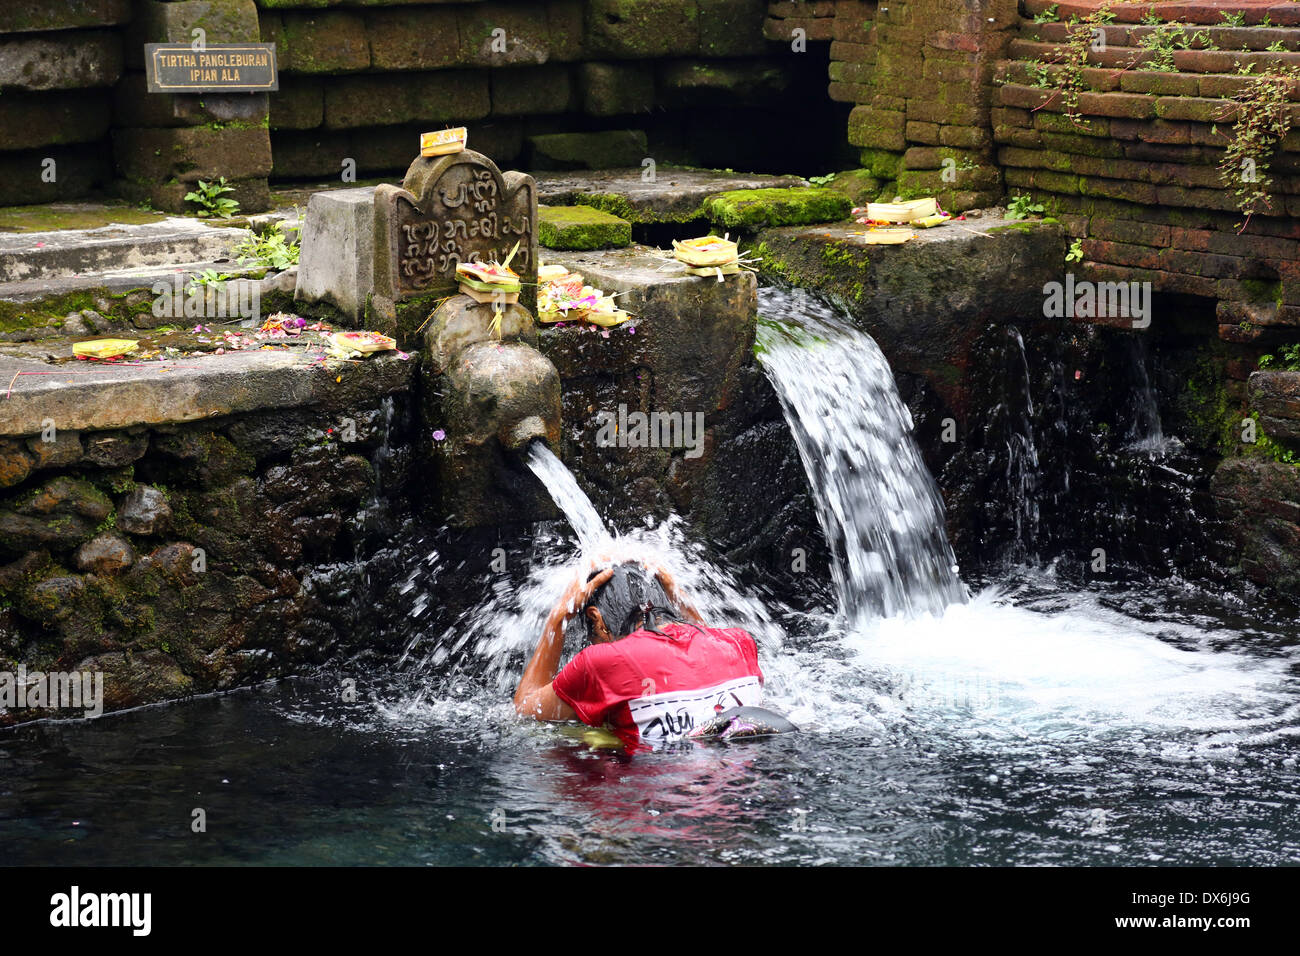 Agua Bendita Primavera en Tirta Empul templo, Tampak Siring, Bali, Indonesia Foto de stock